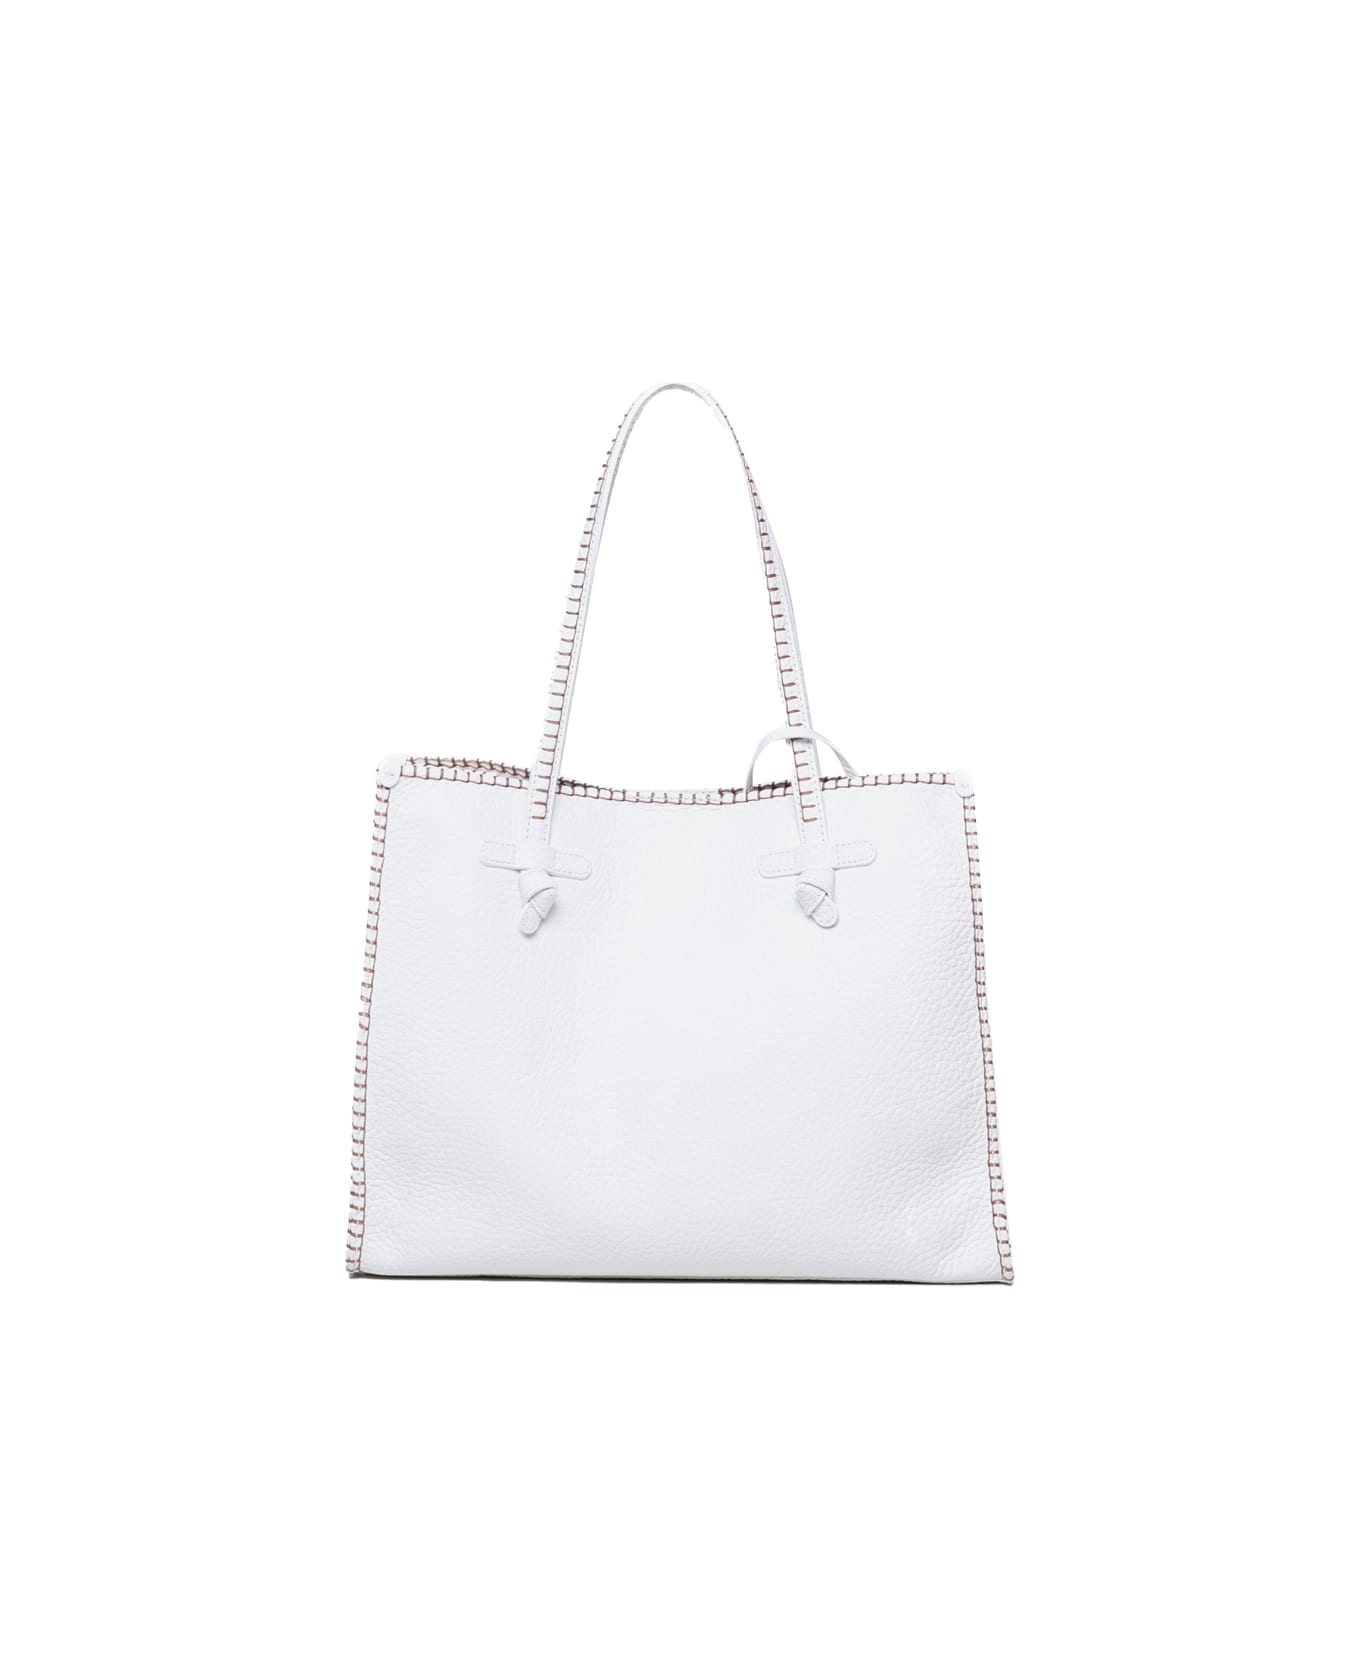 Gianni Chiarini Marcella Shopping Bag In Leather - White